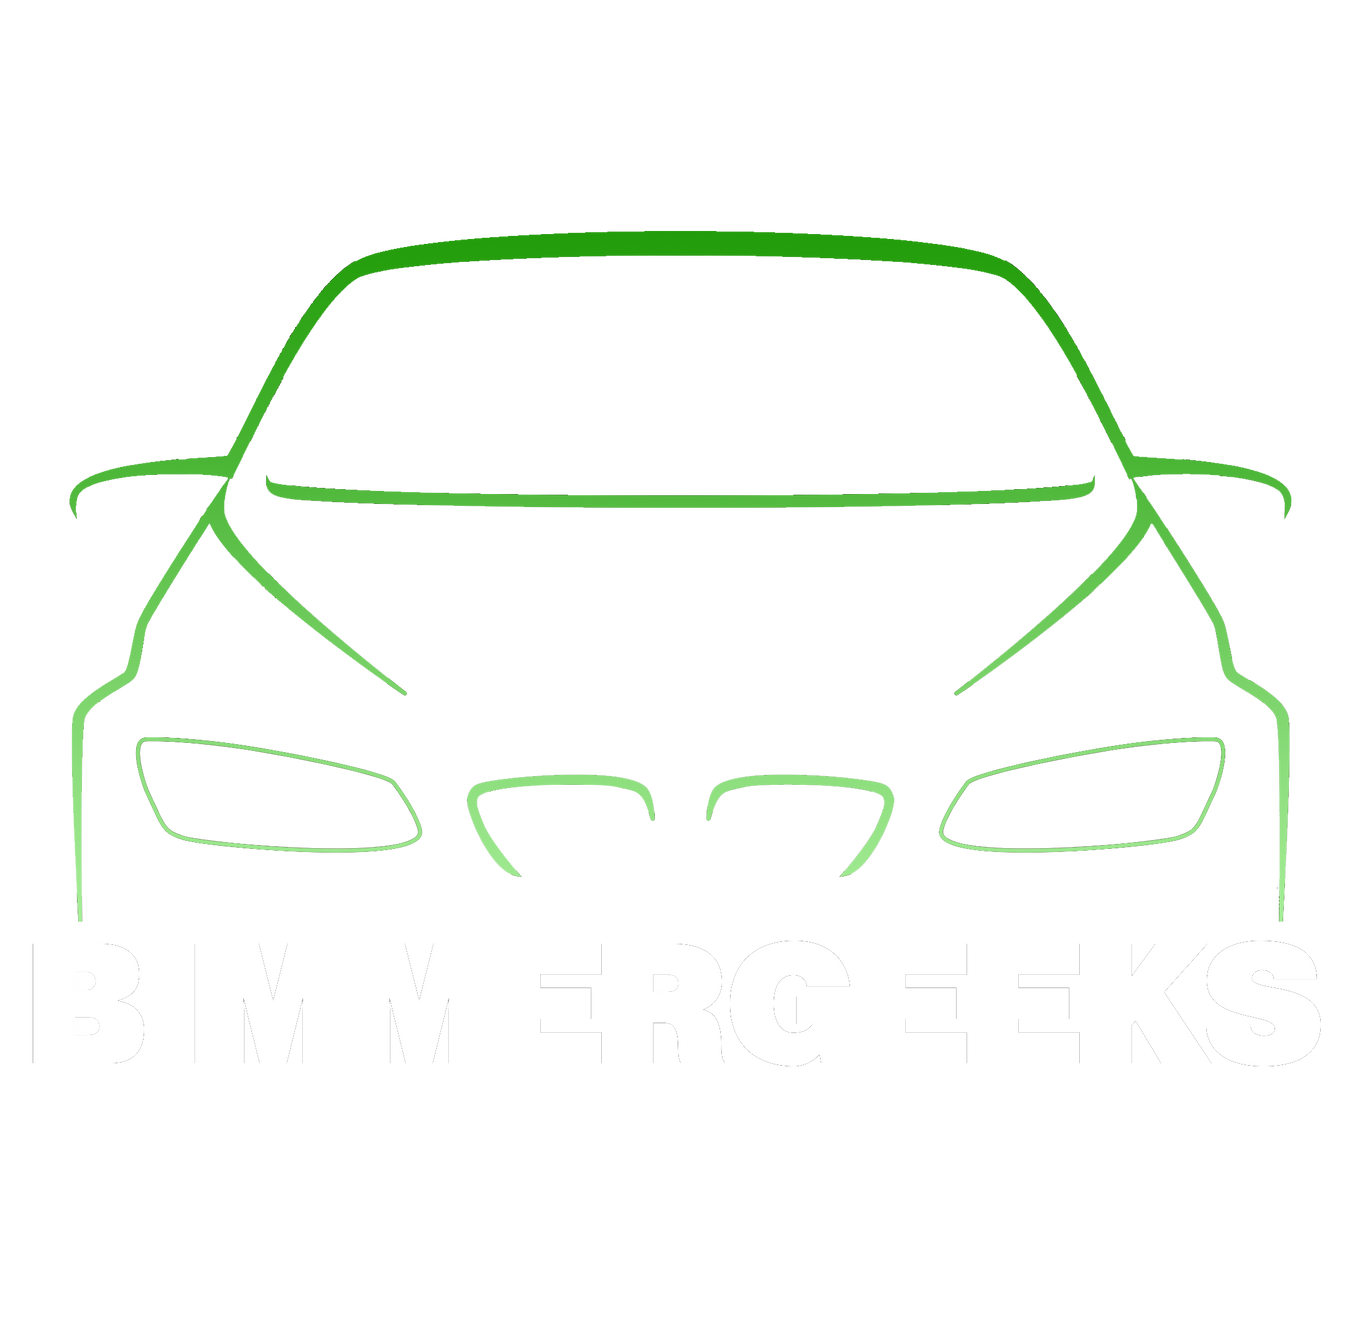 www.bimmergeeks.net